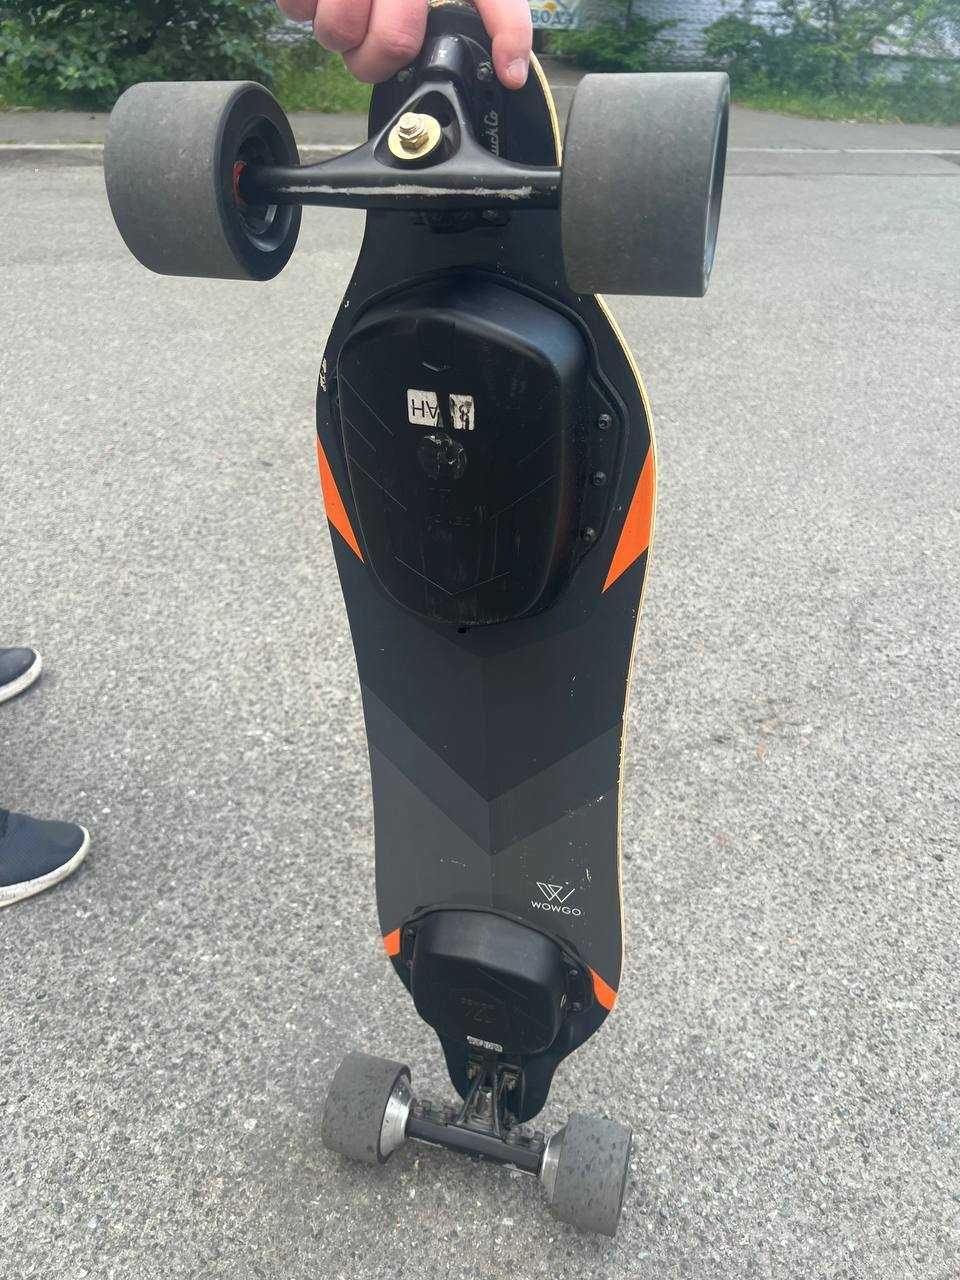 Электрический скейтборд WowGo 3 - самокат - электроскейт 40 км/час